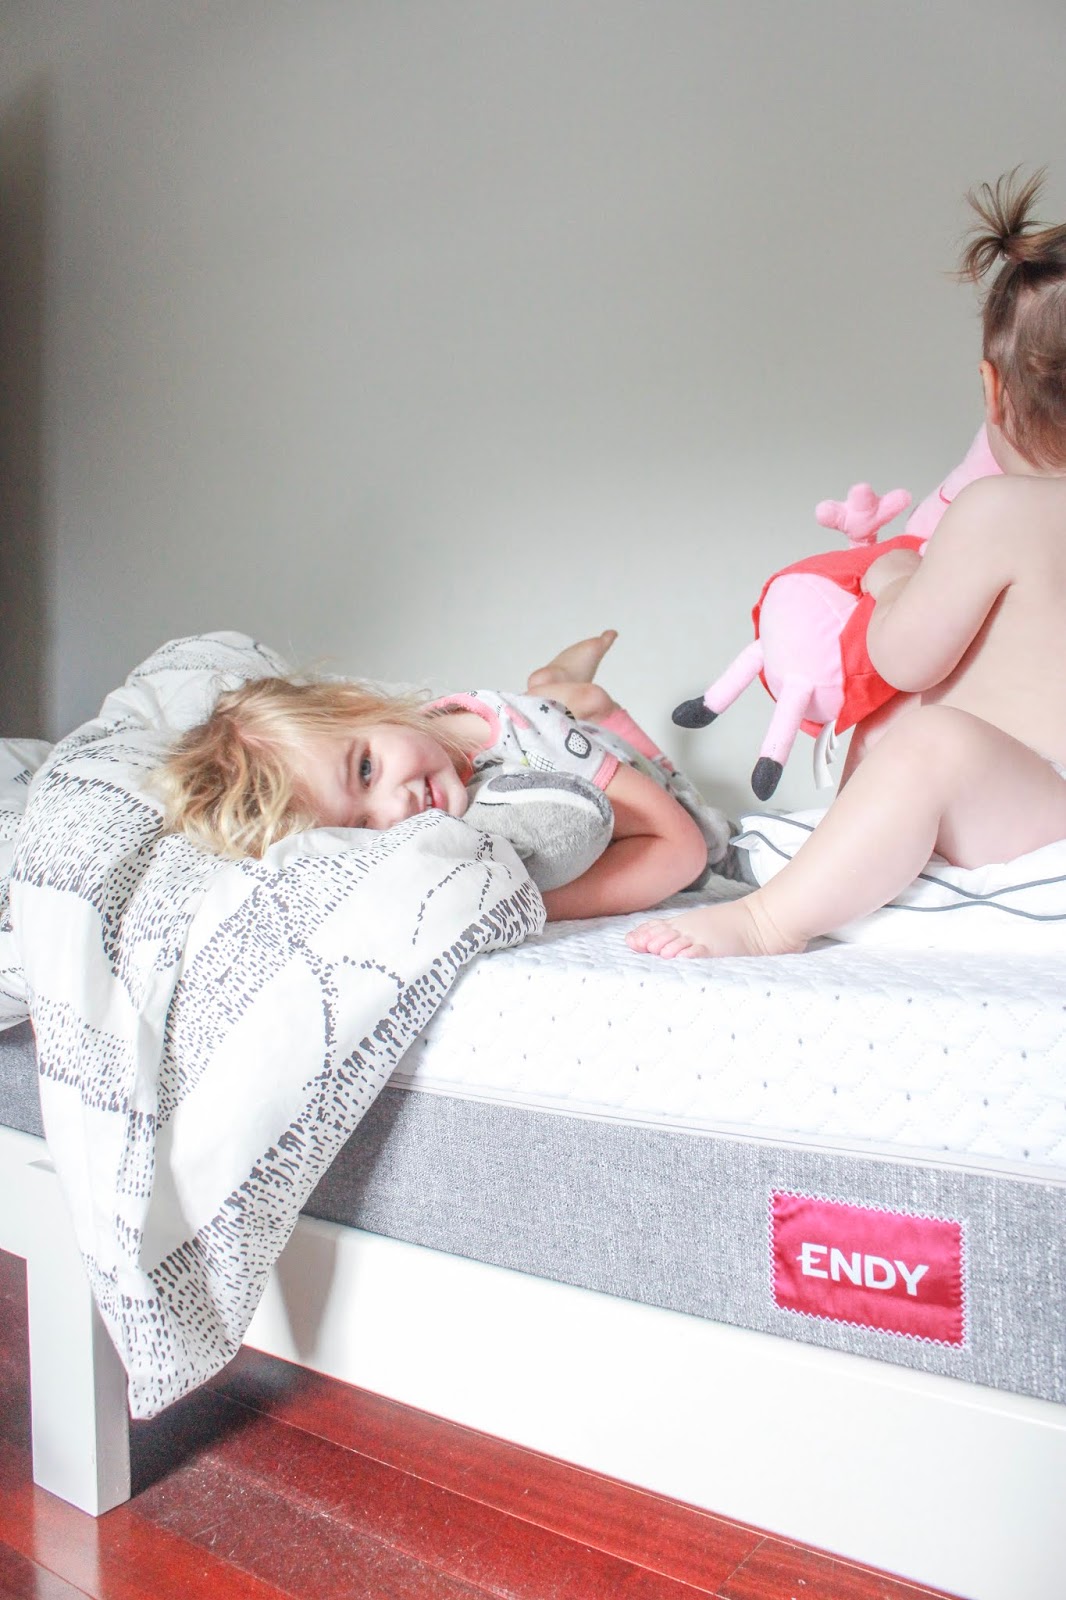 100 Night Endy Mattress Review, From an Honest Preschooler